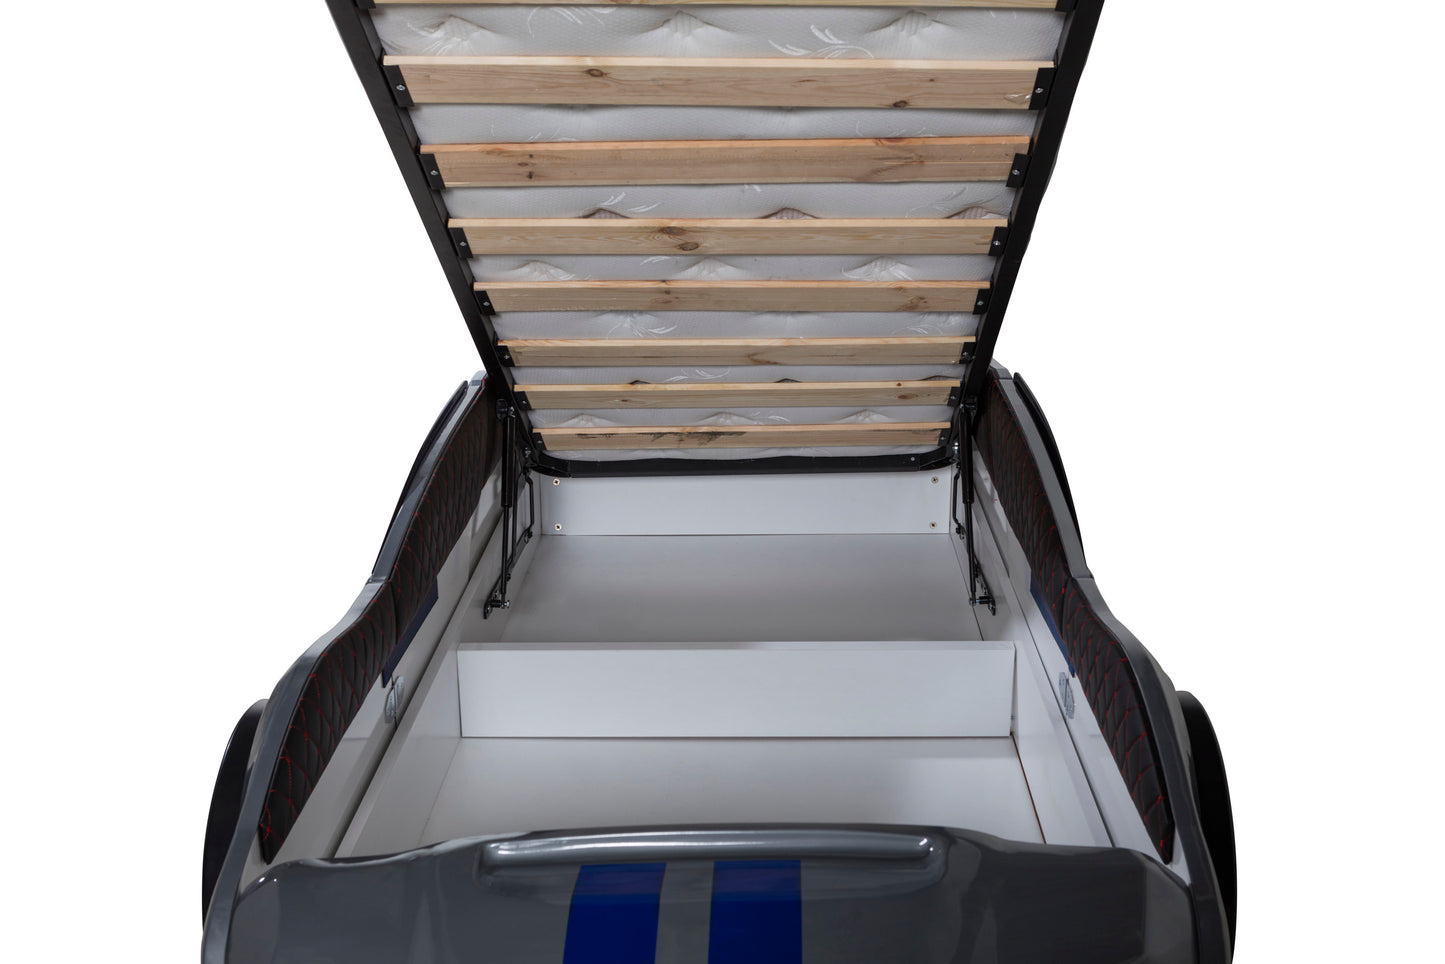 Letto singolo contenitore a forma di auto sportiva MUSTANG colore grigio, con apertura porte, materasso incluso.